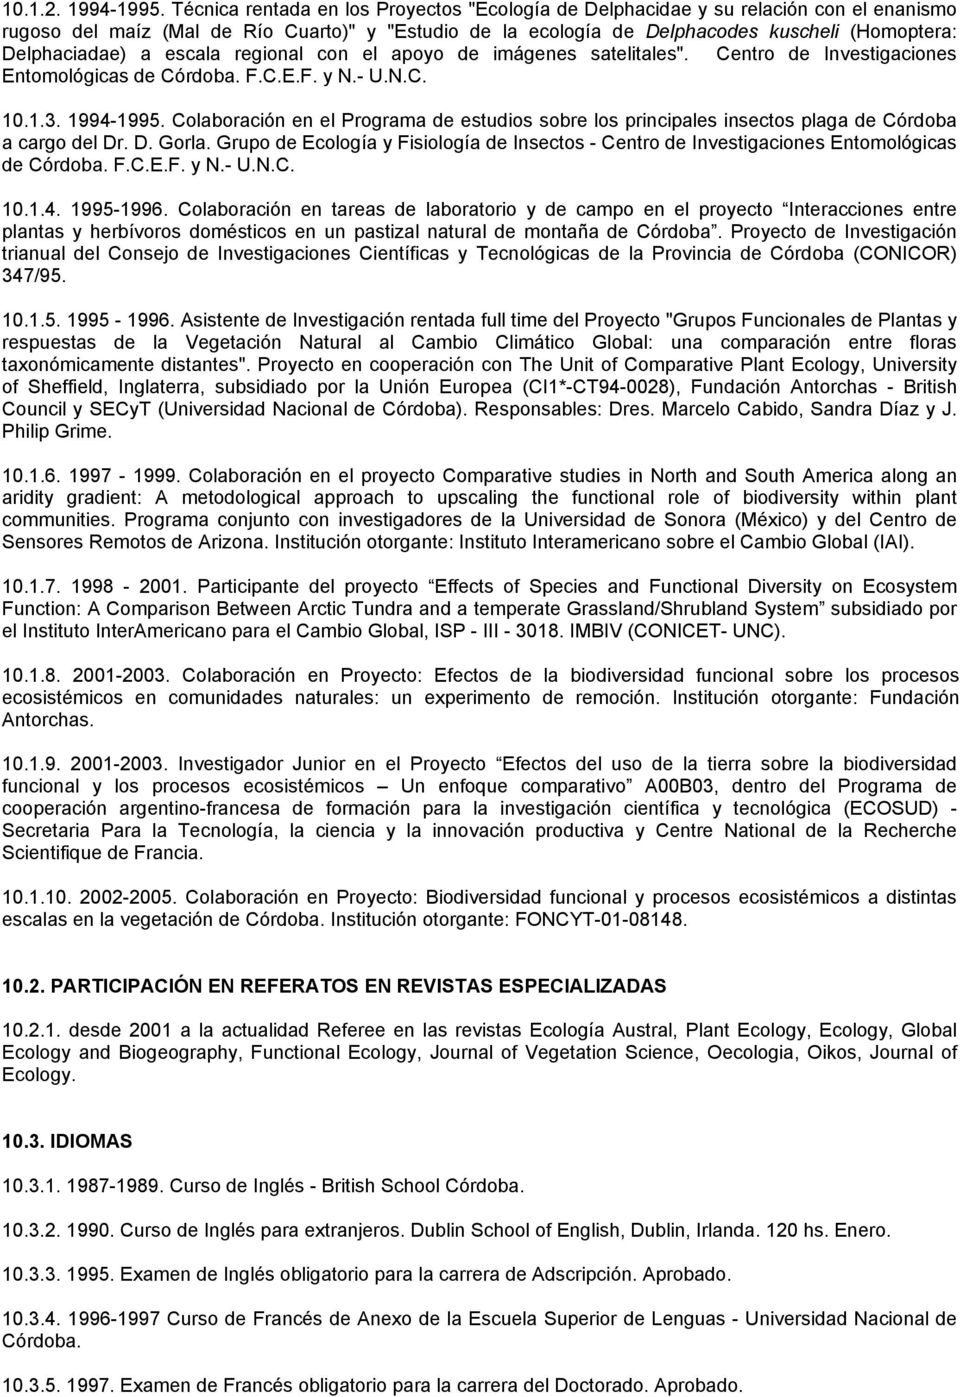 Delphaciadae) a escala regional con el apoyo de imágenes satelitales". Centro de Investigaciones Entomológicas de Córdoba. F.C.E.F. y N.- U.N.C. 10.1.3. 1994-1995.